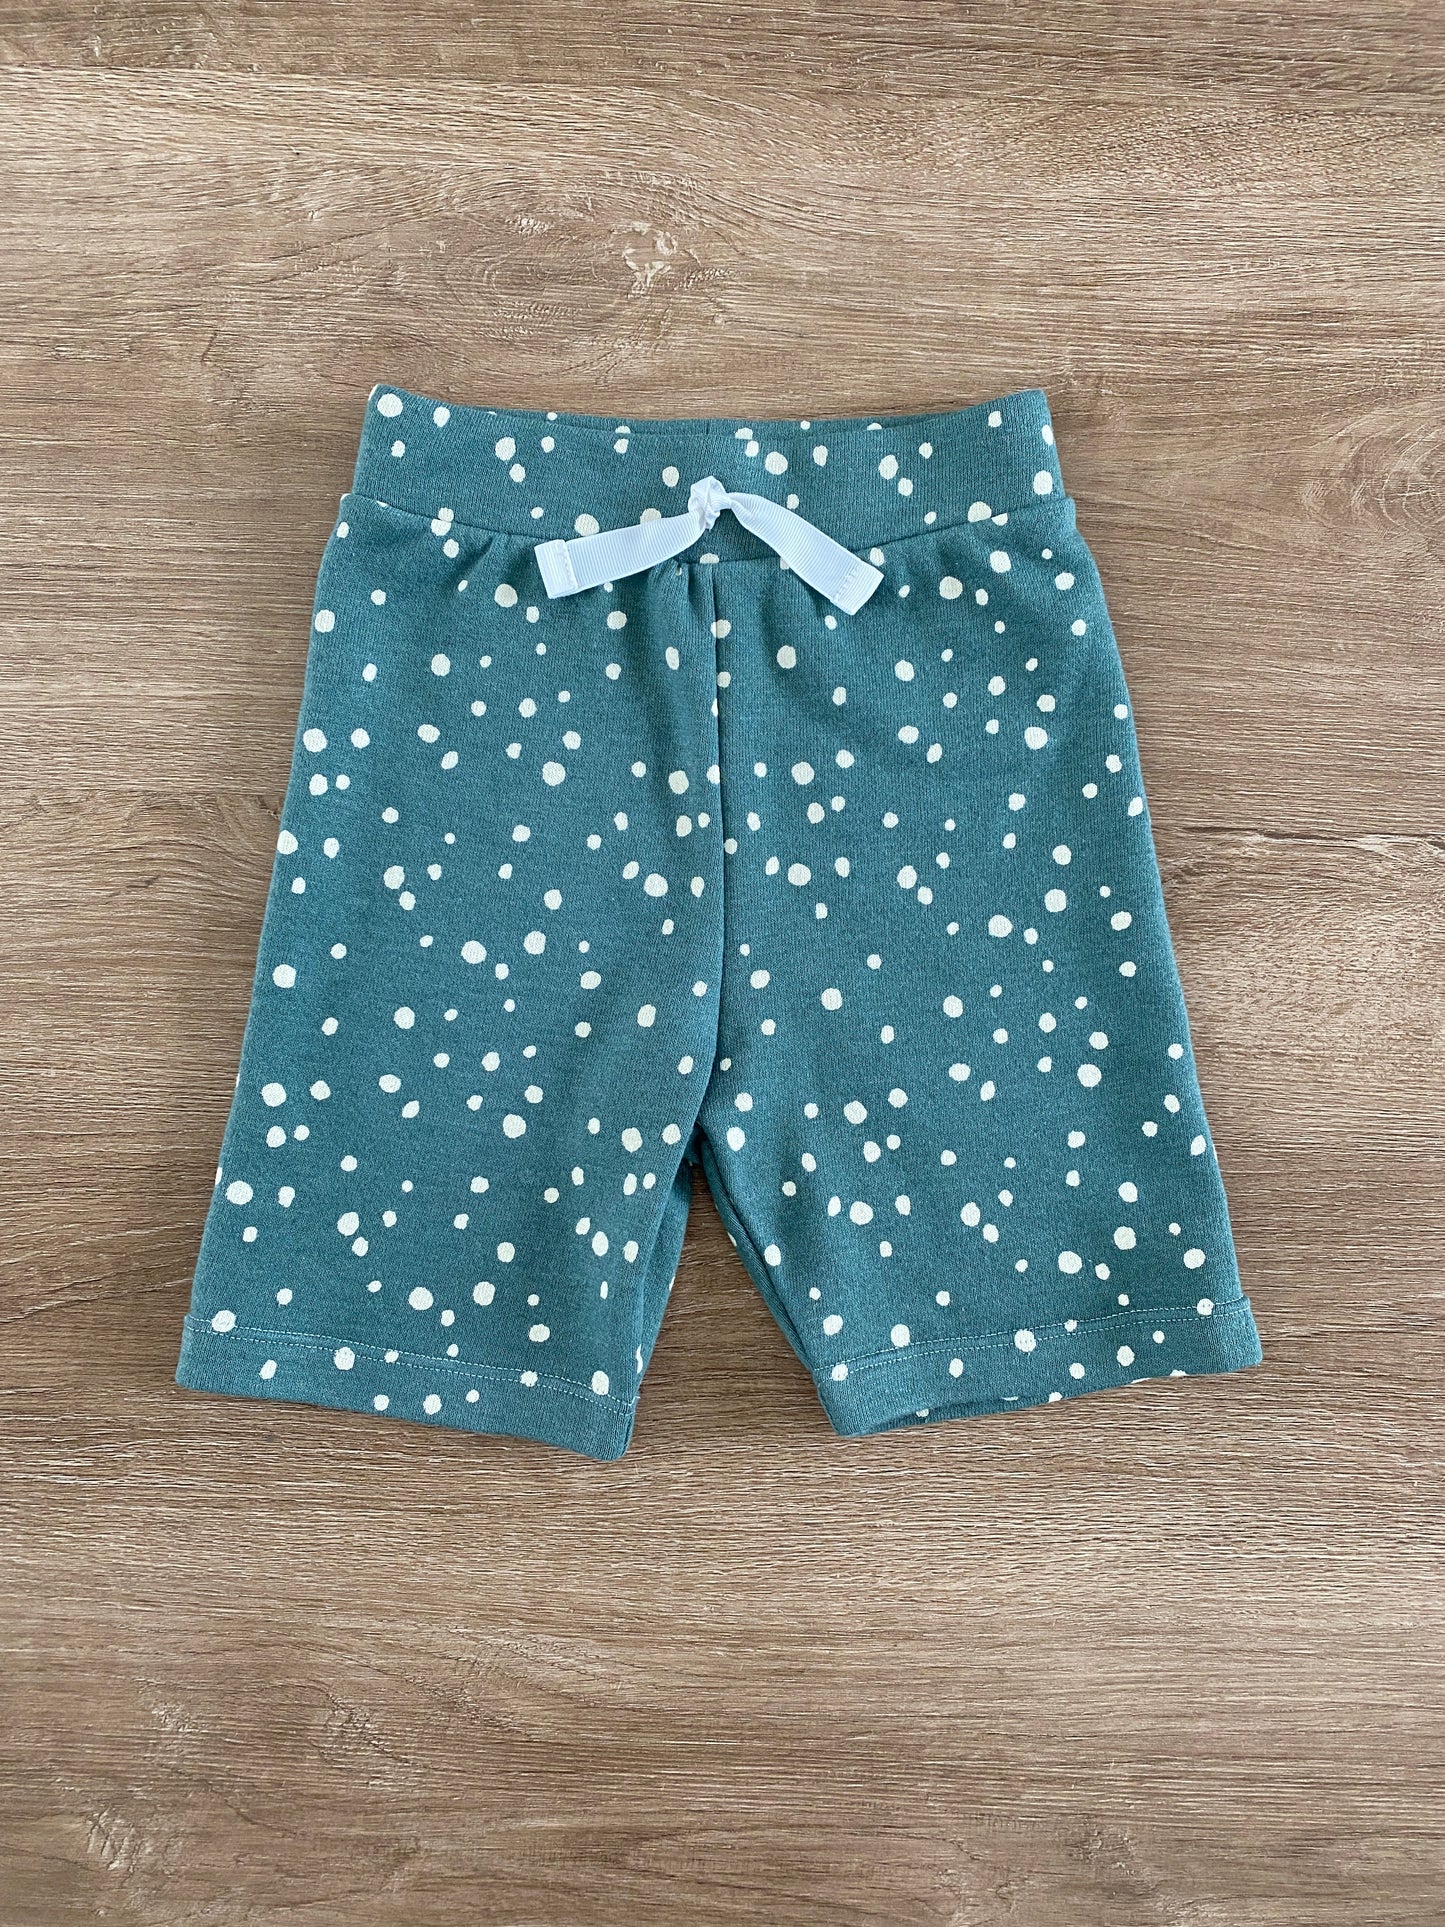 Summer Shorts Pattern